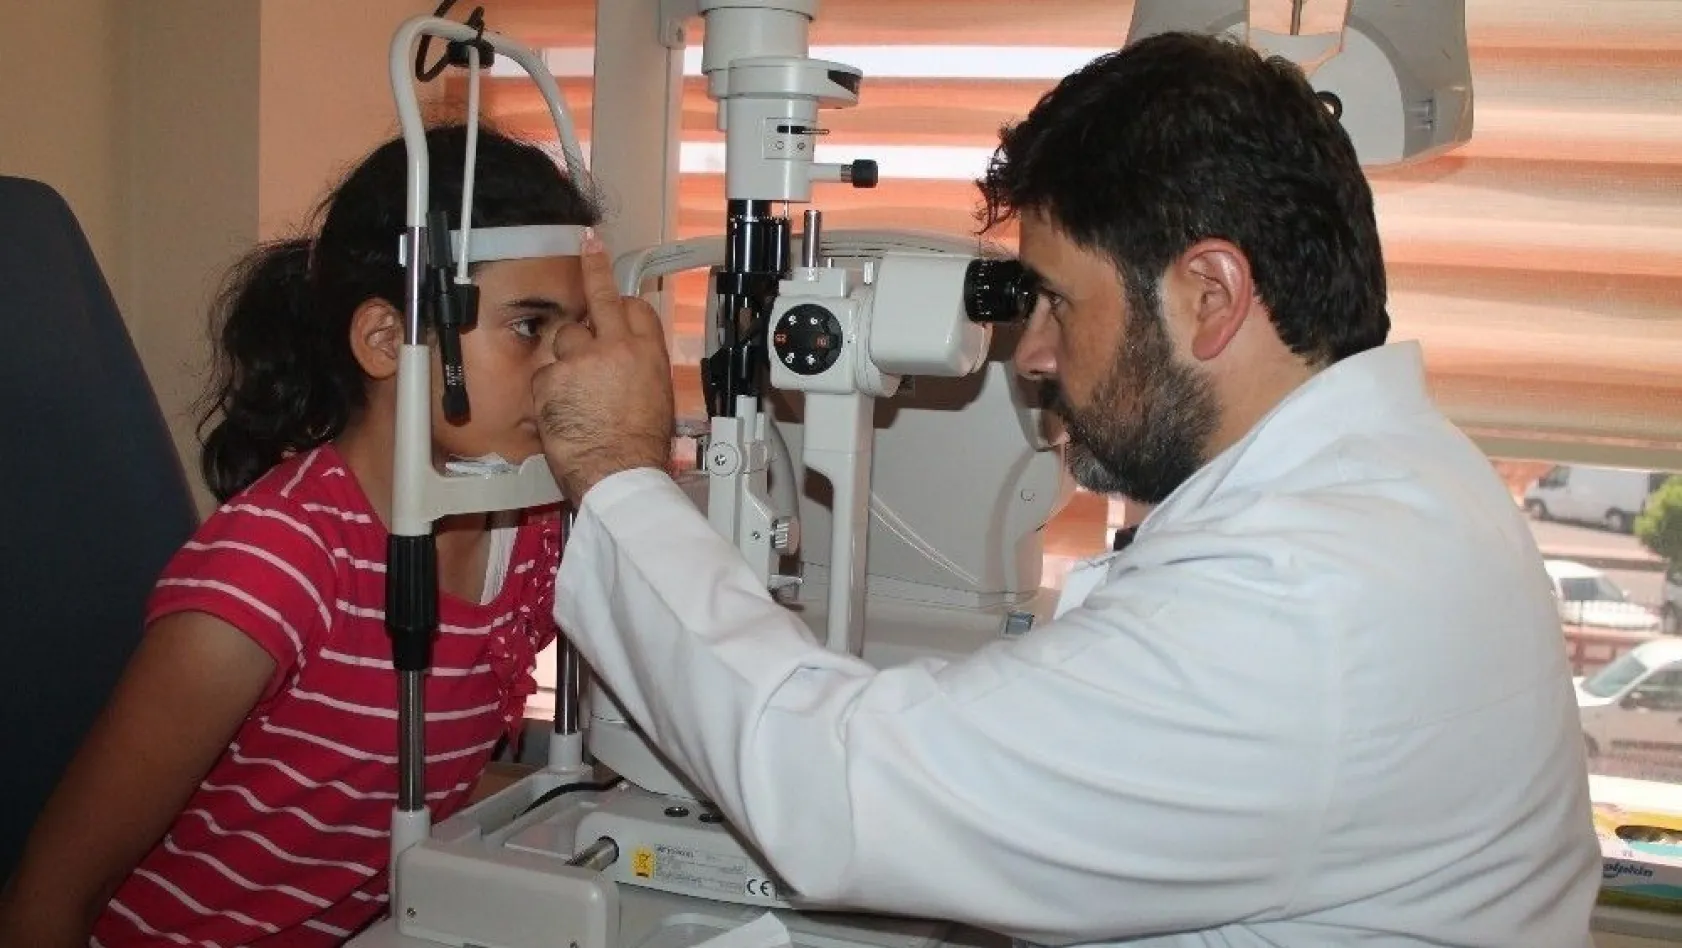 Yrd. Doç. Dr. Bilen dünyada 285 milyon görme engelli insanın olduğunu belirtti
